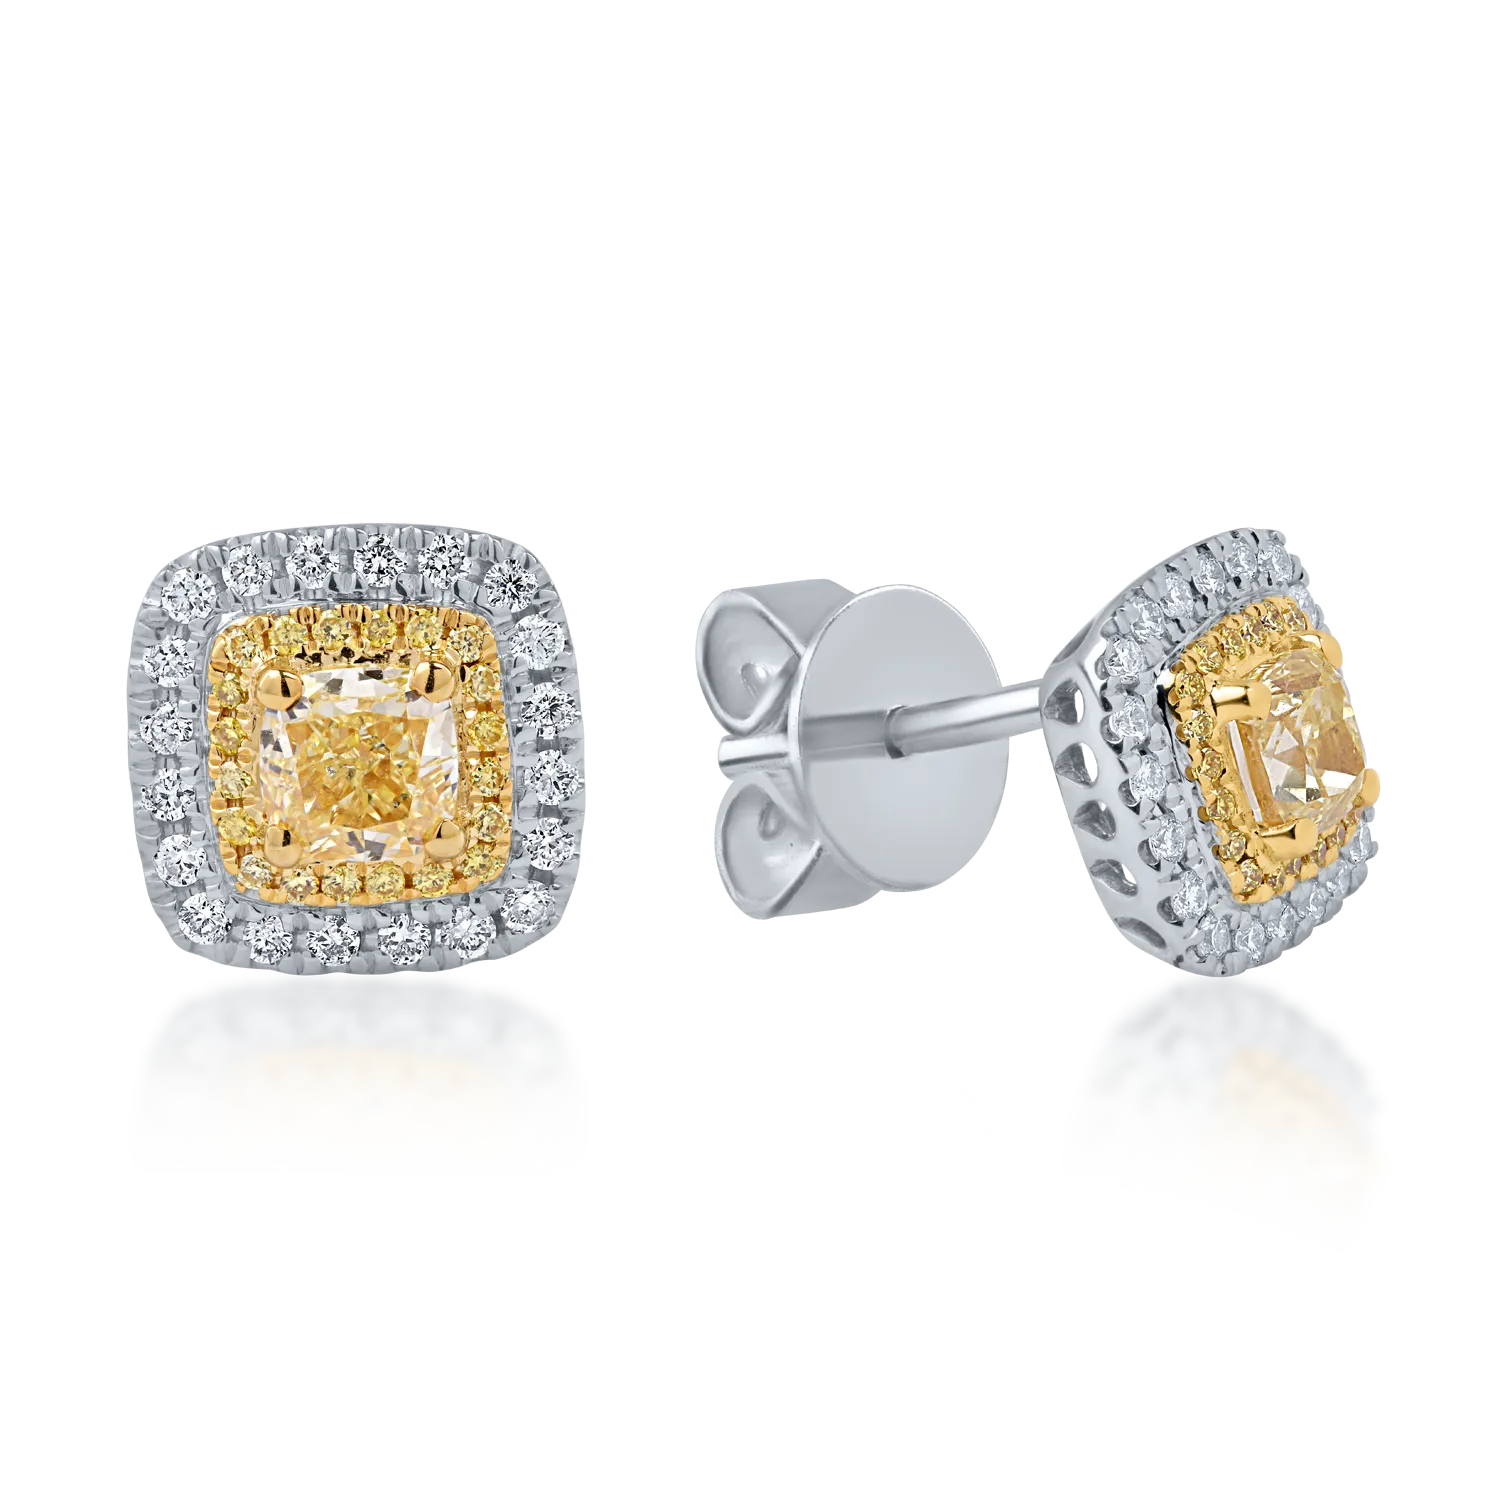 Cercei din aur alb-galben cu diamante galbene de 1.13ct si diamante transparente de 0.26ct